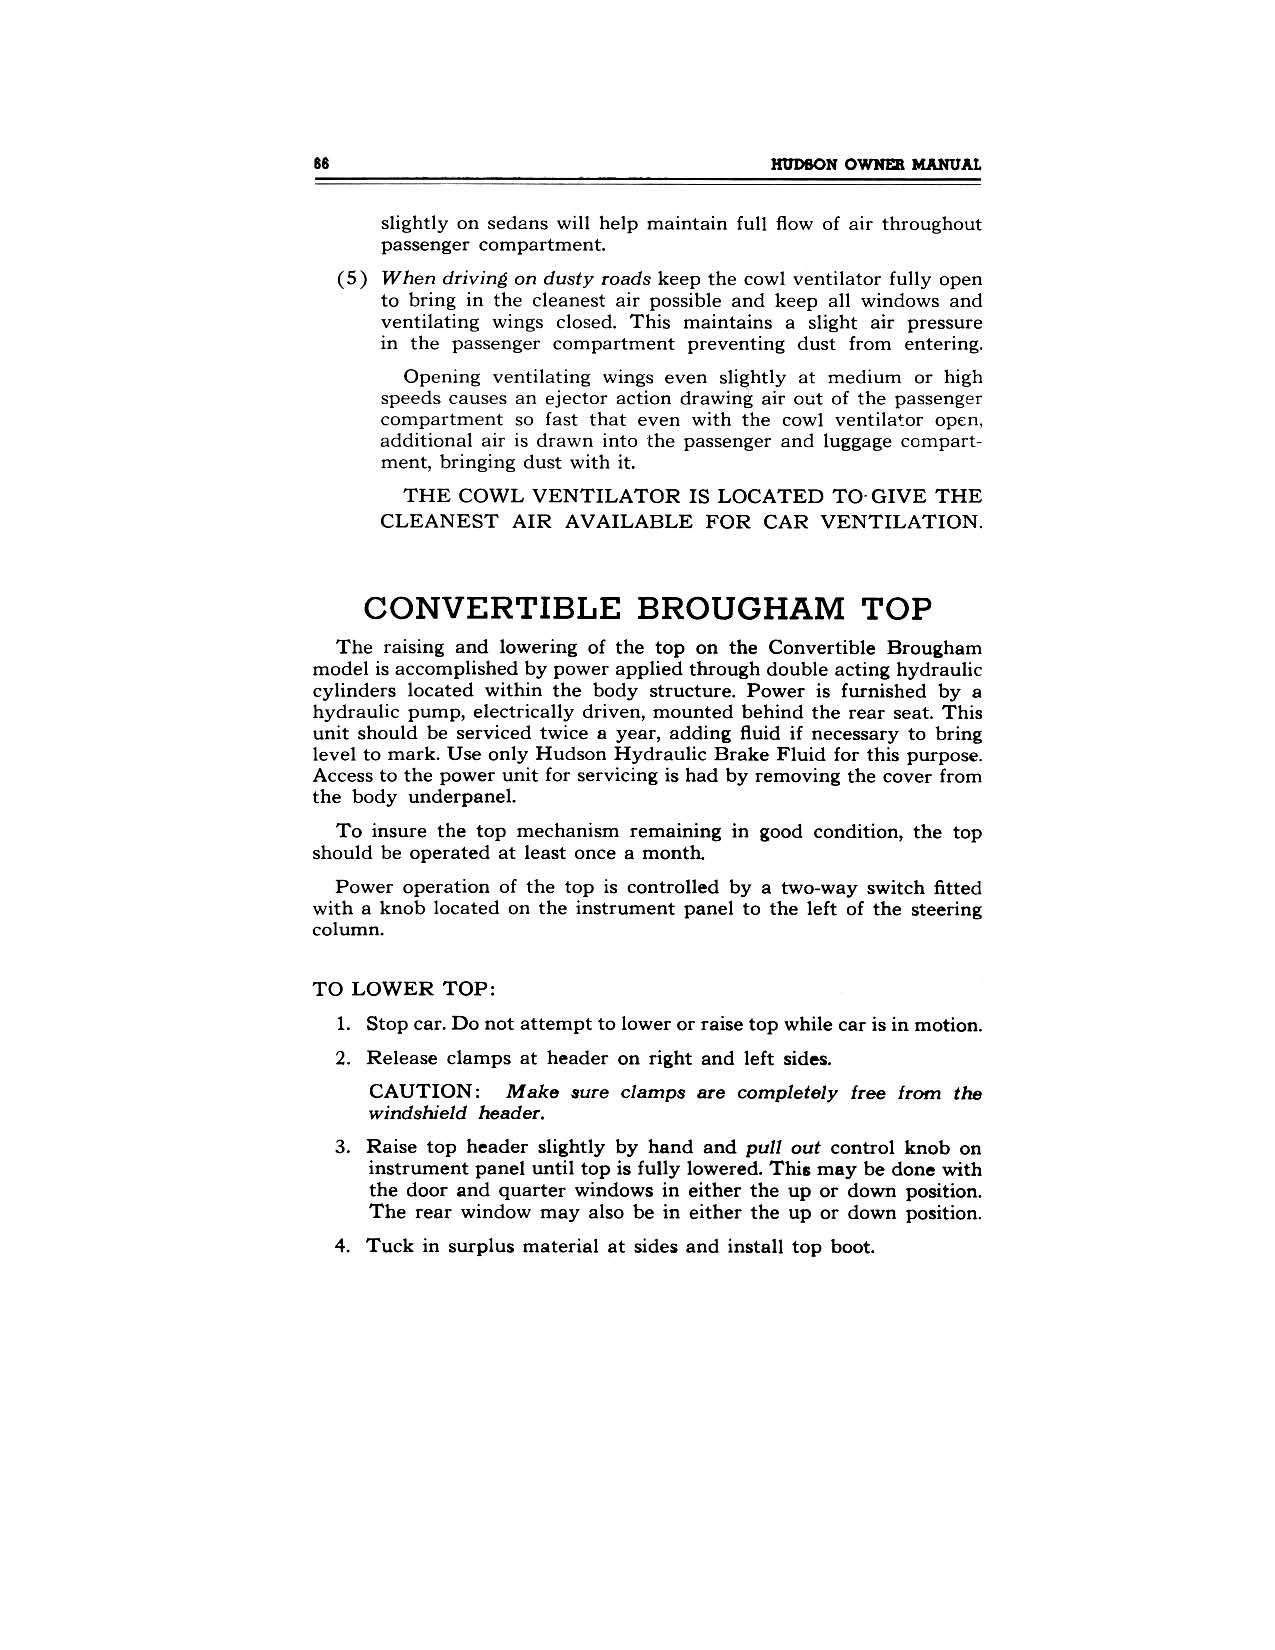 1949 Hudson Owners Manual-68